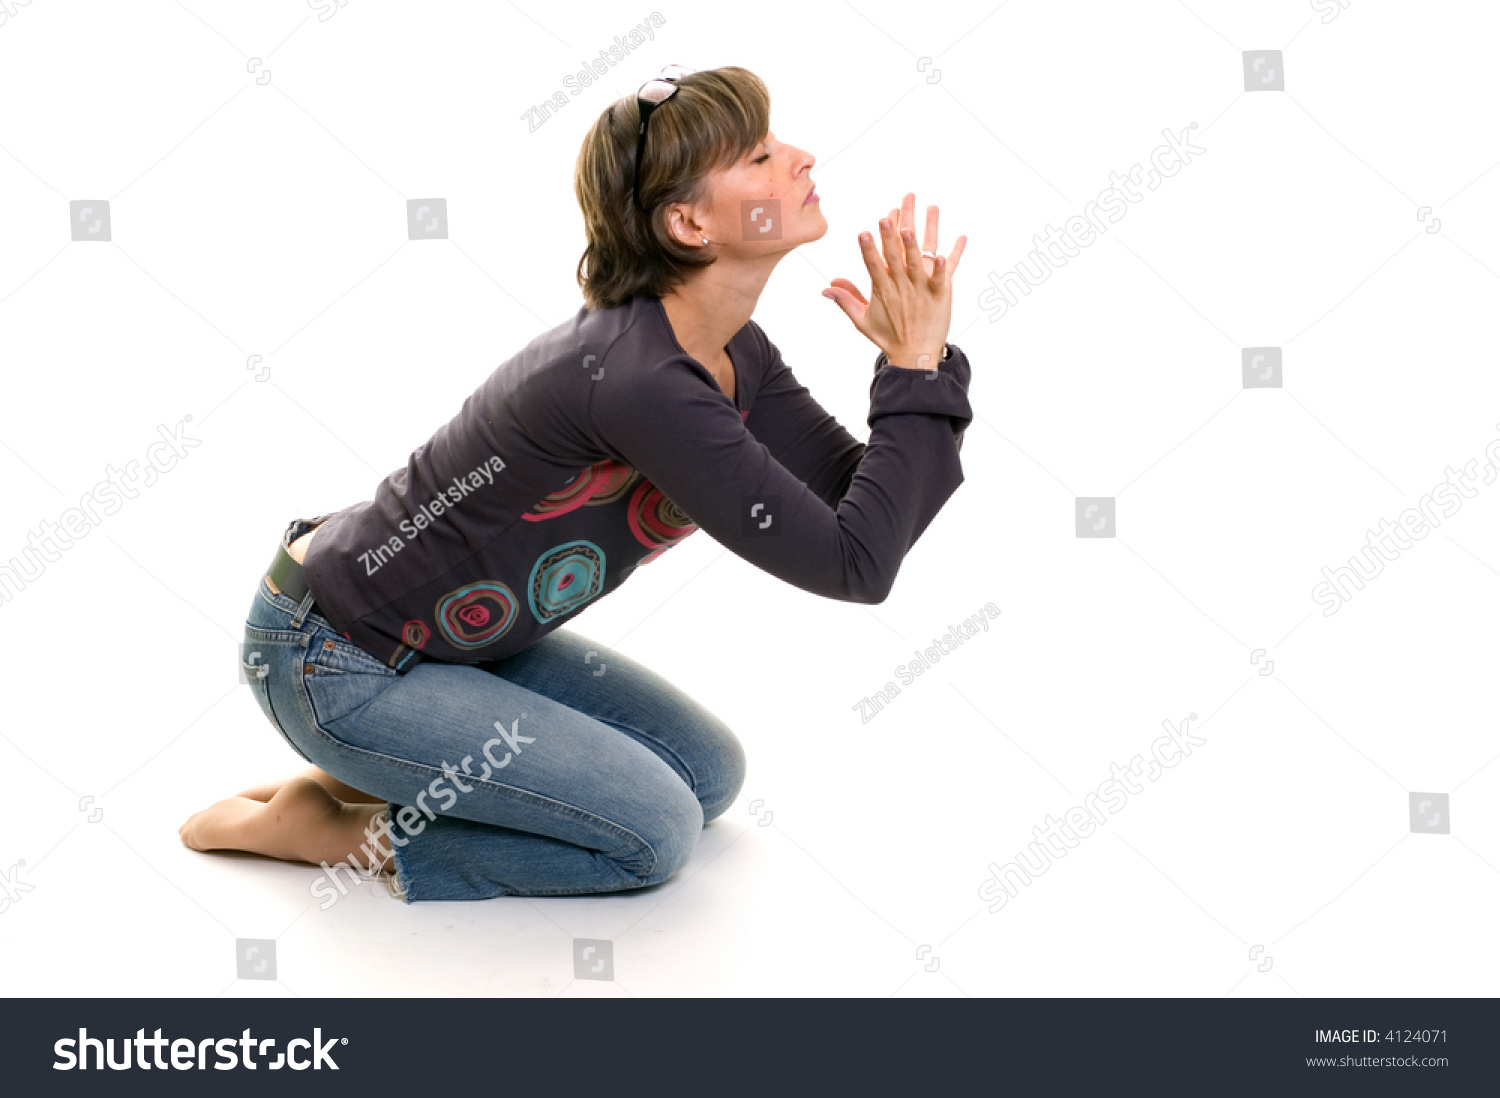 Woman Praying On Her Knees